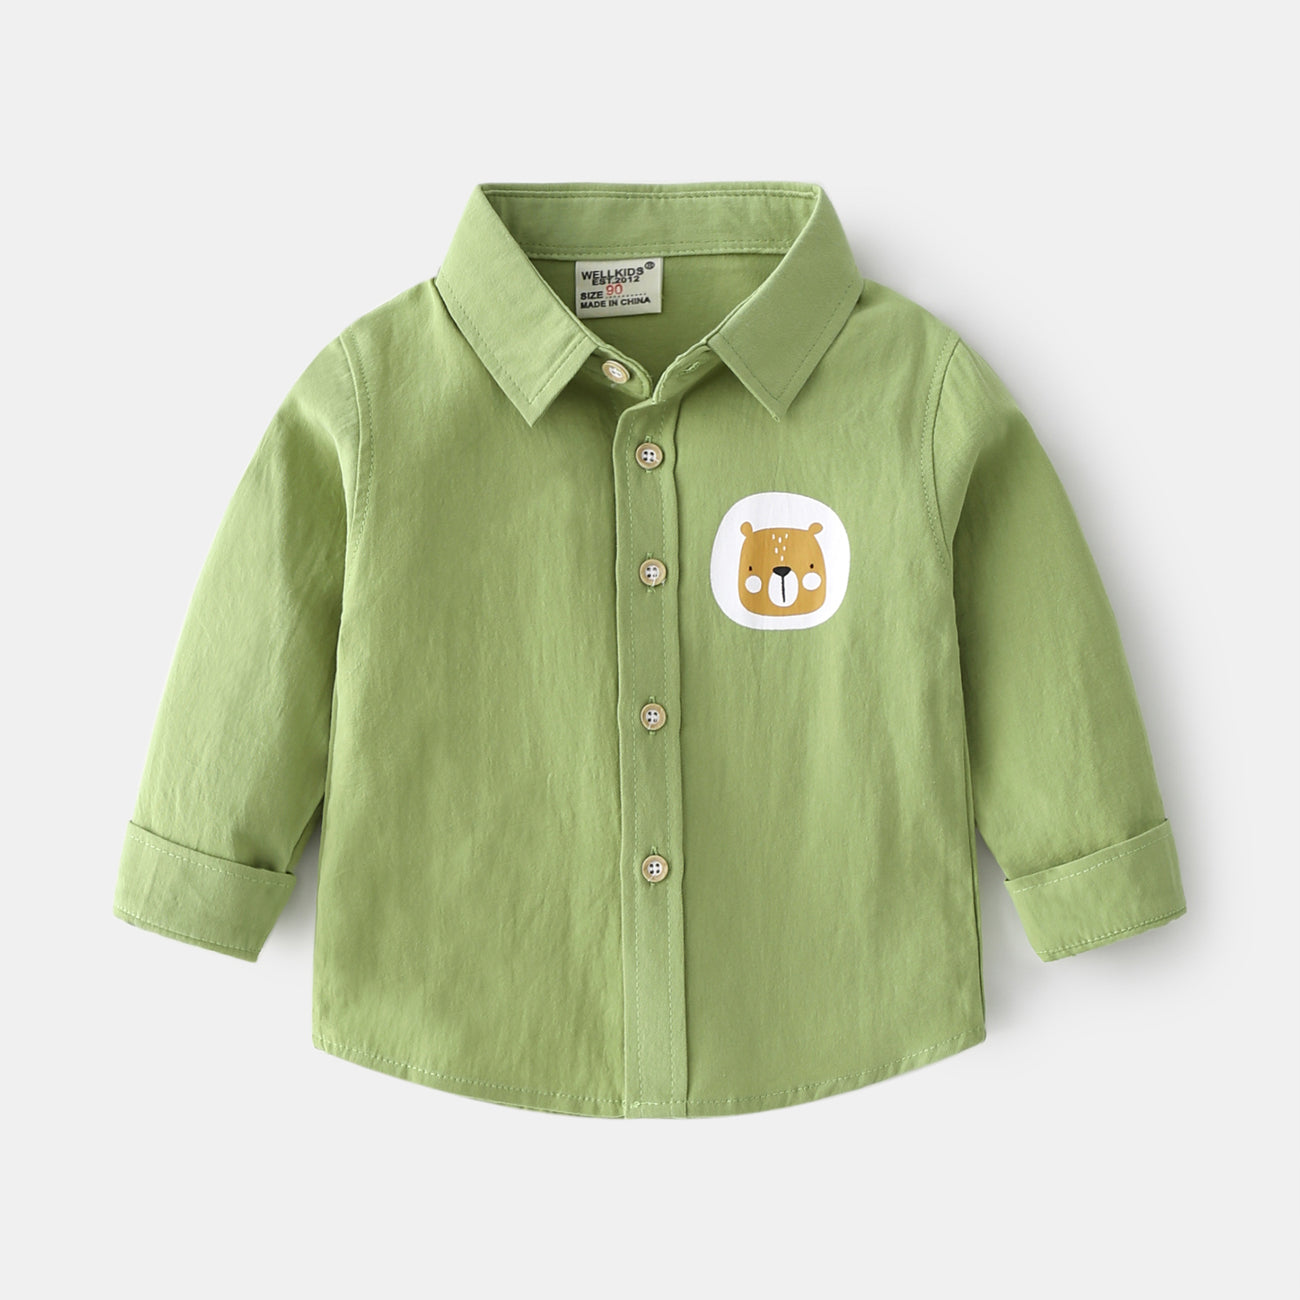 [513431] - Baju Atasan Import Kemeja Anak - Motif Baby Bear